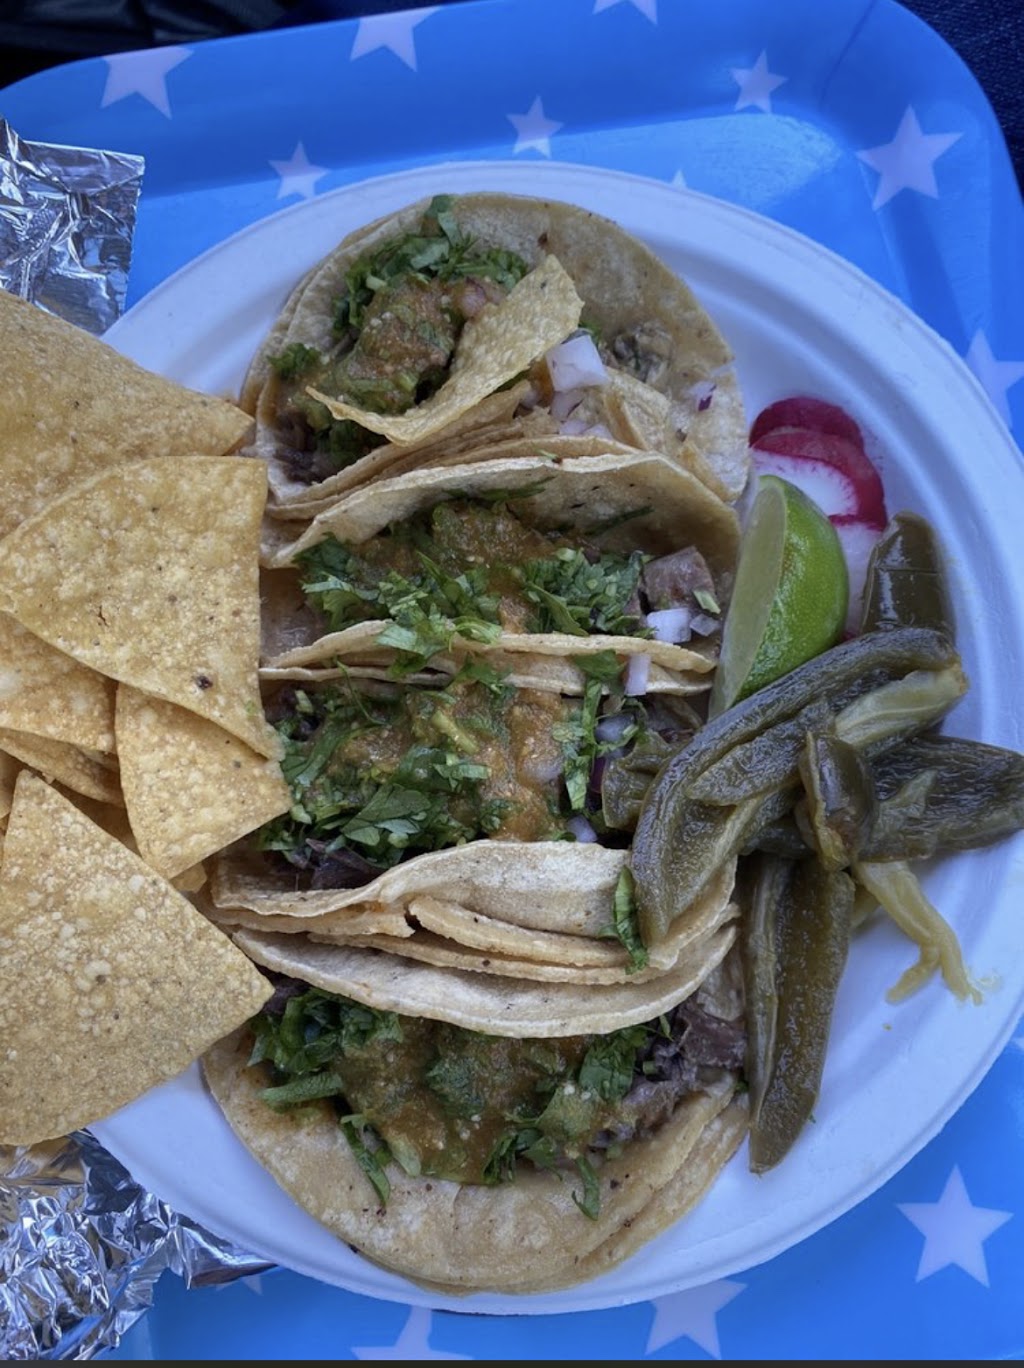 Tacos El Rey Food Truck | 800 Potter St, Berkeley, CA 94710 | Phone: (510) 593-1020